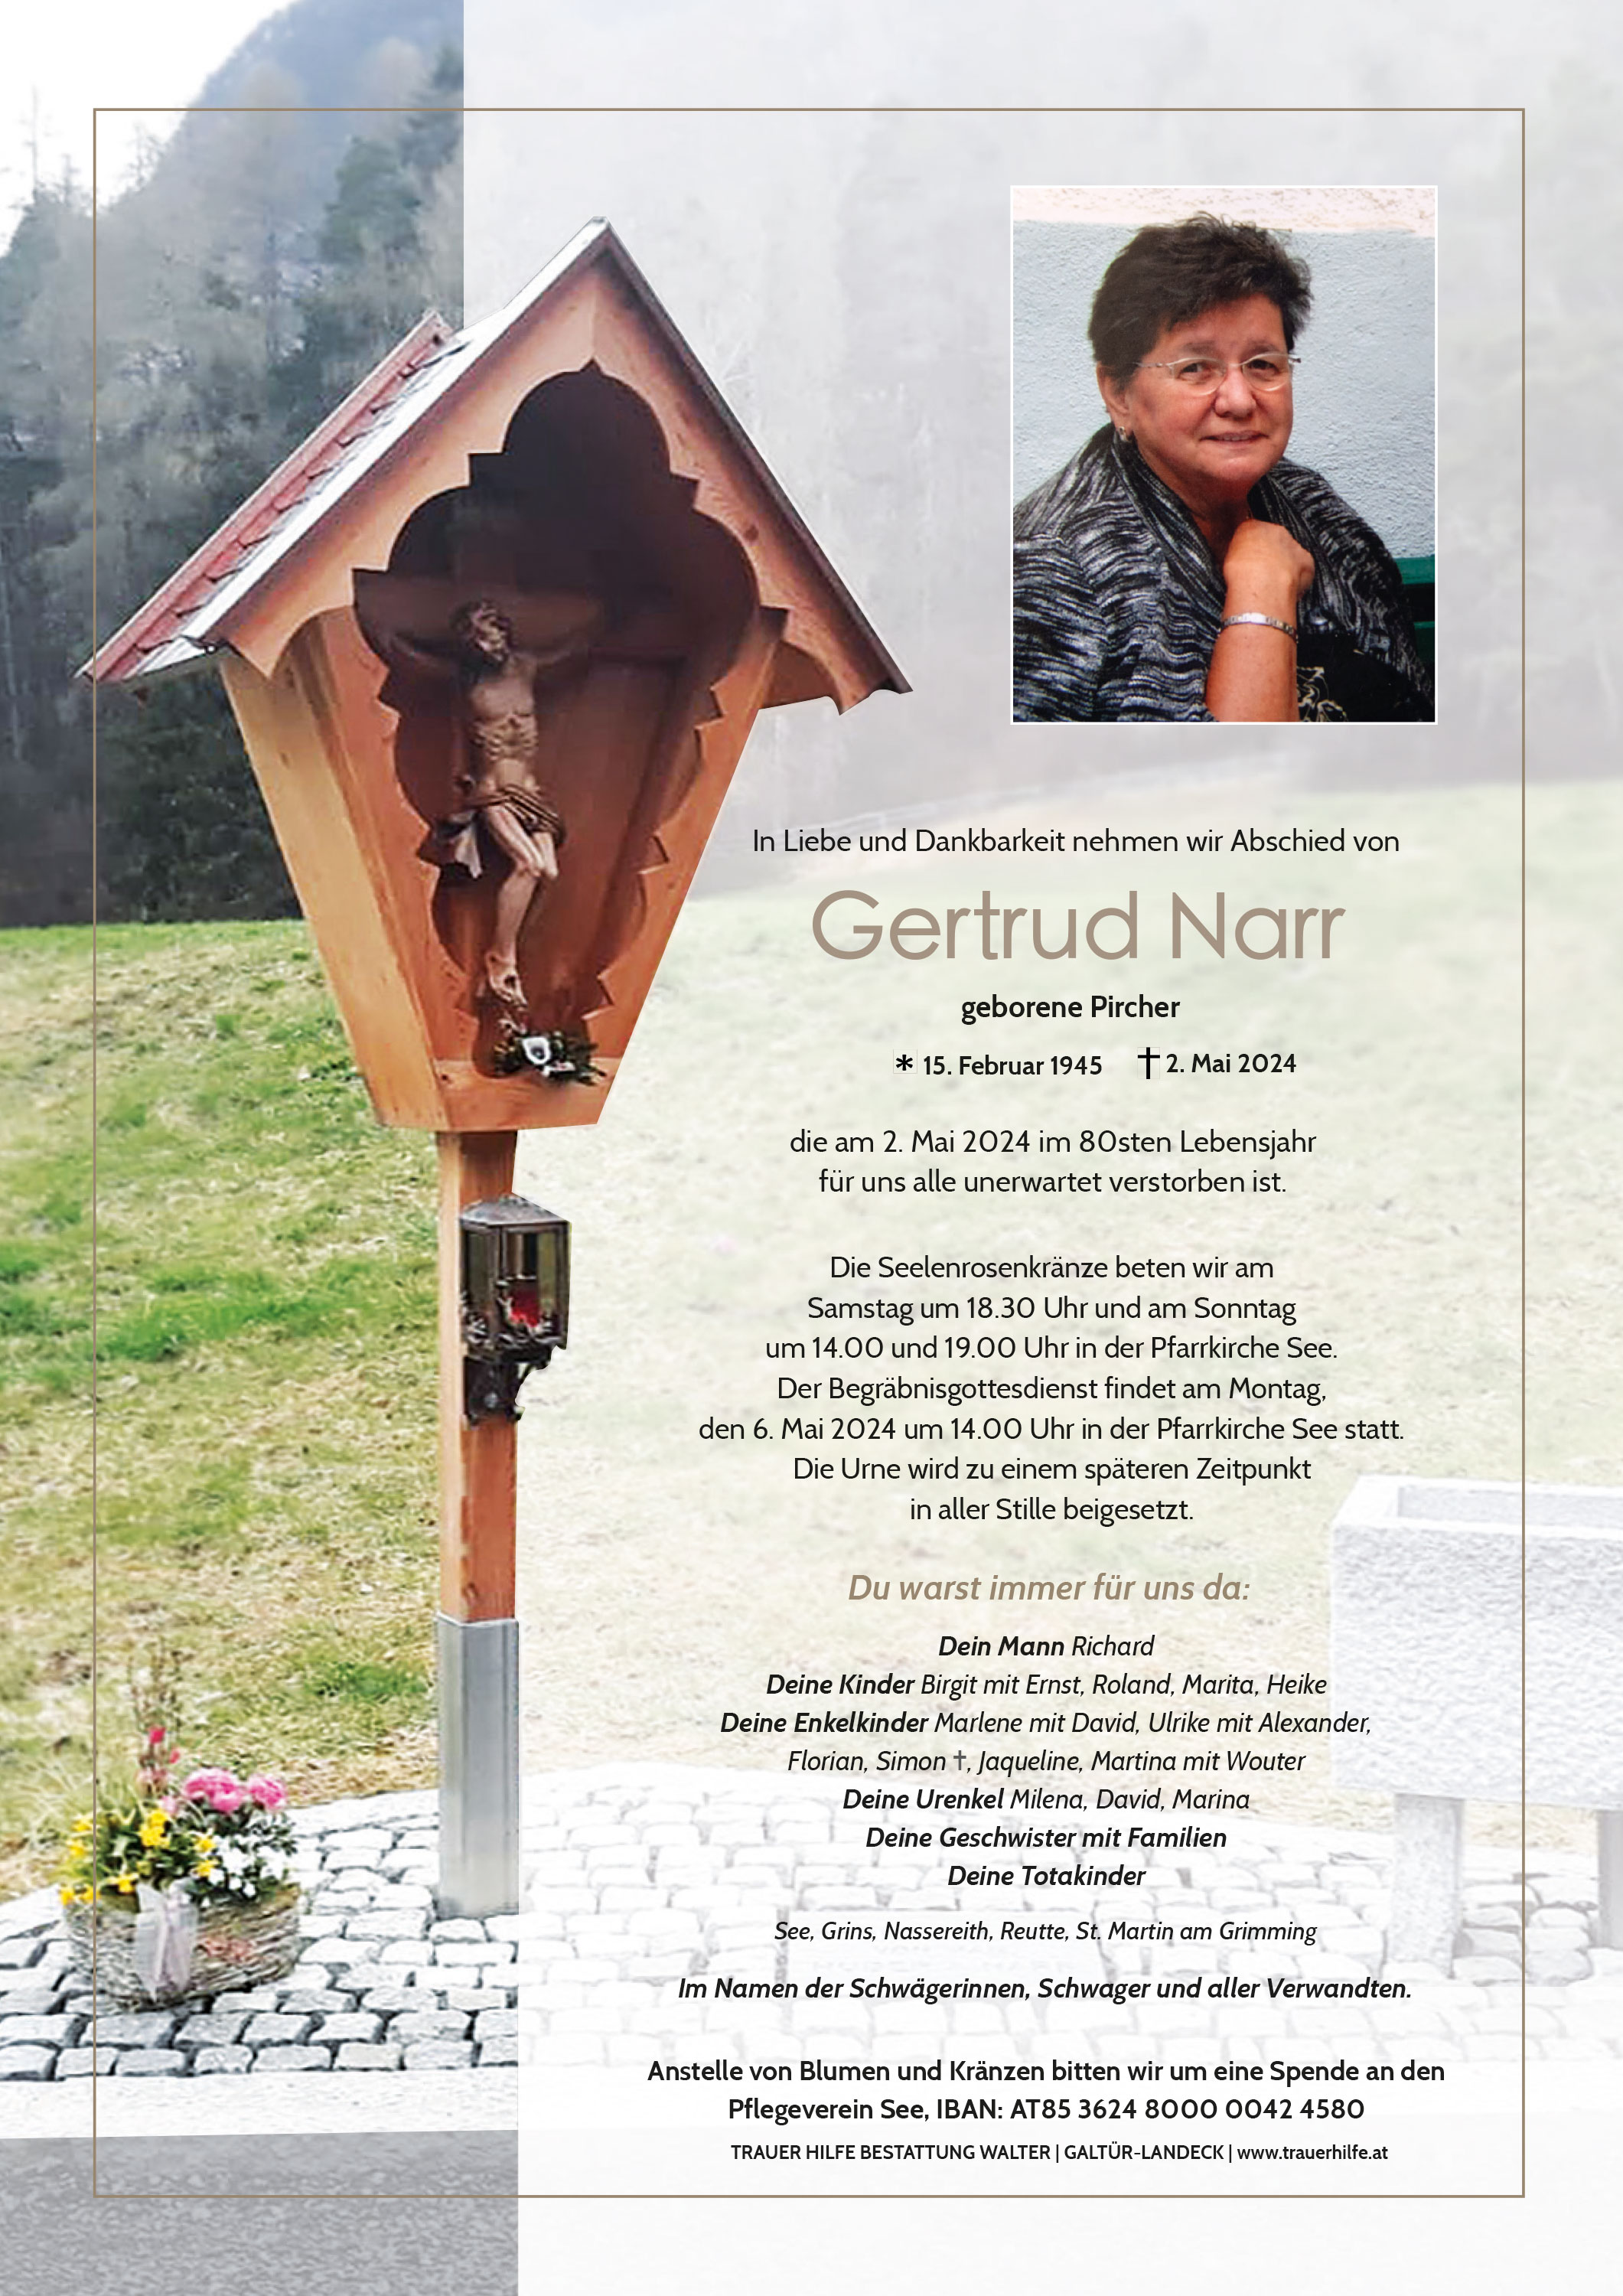 Gertrud Narr